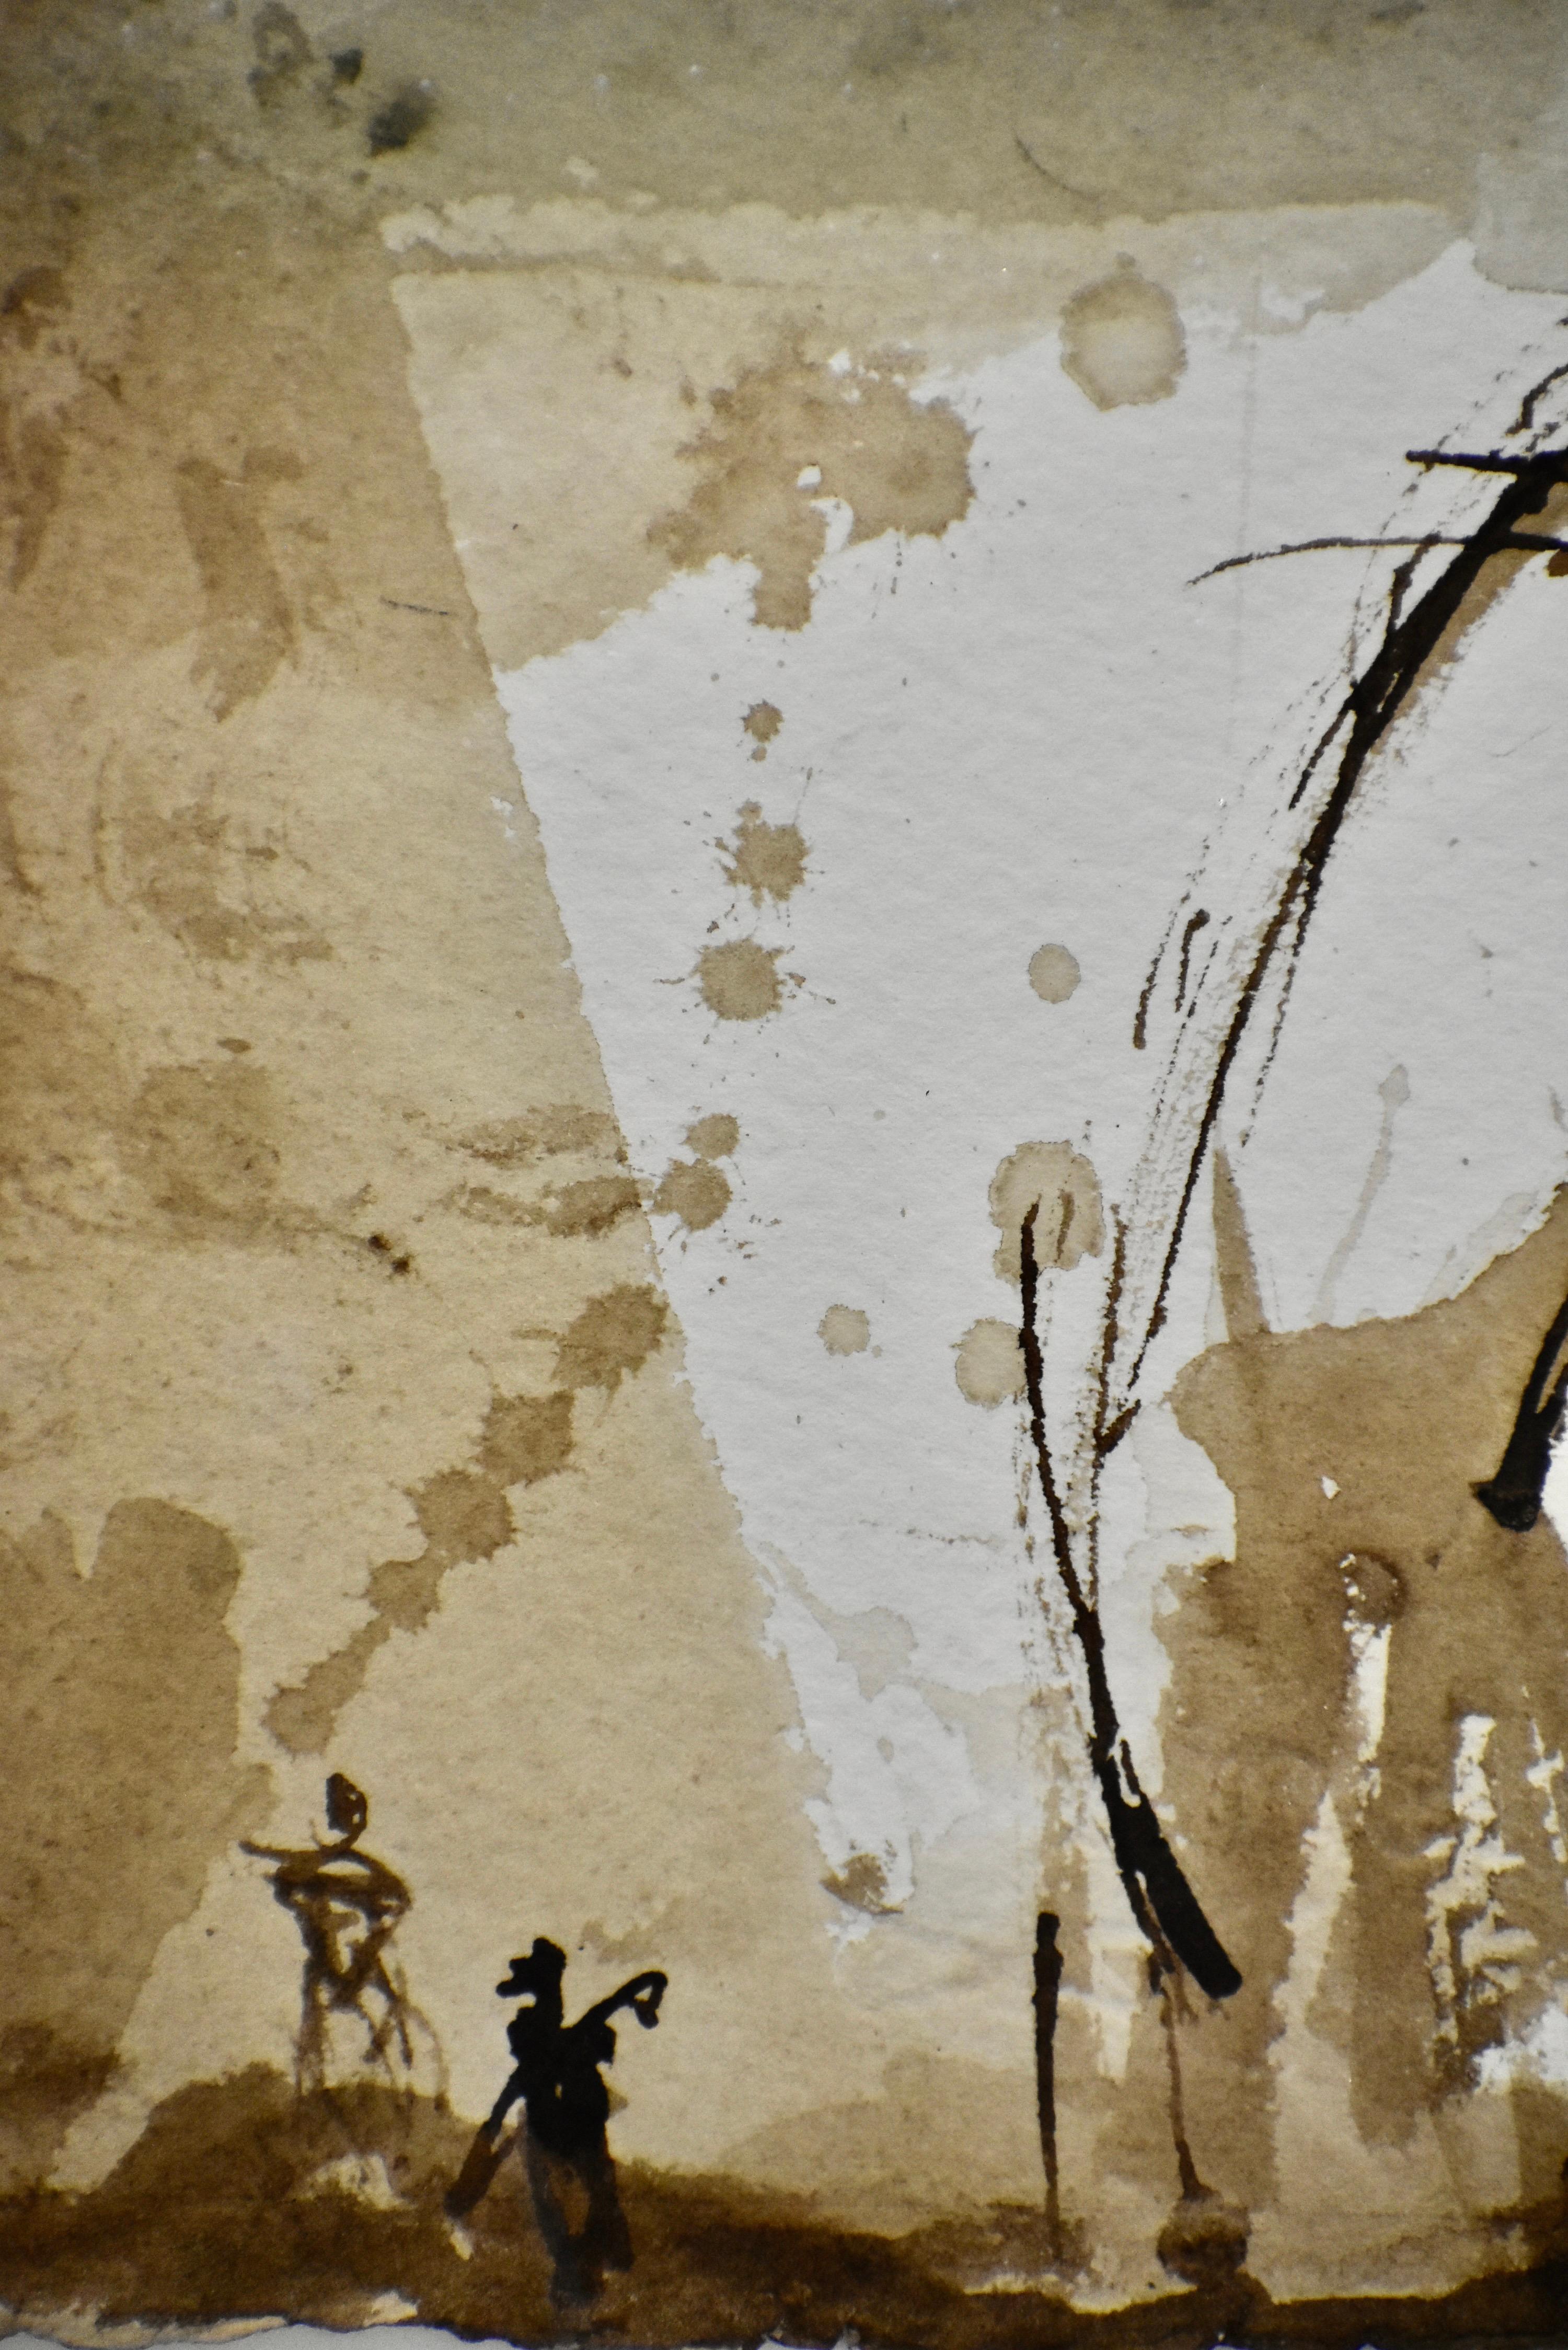 L'un des dessins à l'encre sépia les plus recherchés de l'époque sépia de Gail.

Artiste rare et viscérale, les œuvres de Gail Foster sont des rendus passionnément expressifs d'idées complexes. Ses derniers travaux comprennent la photographie